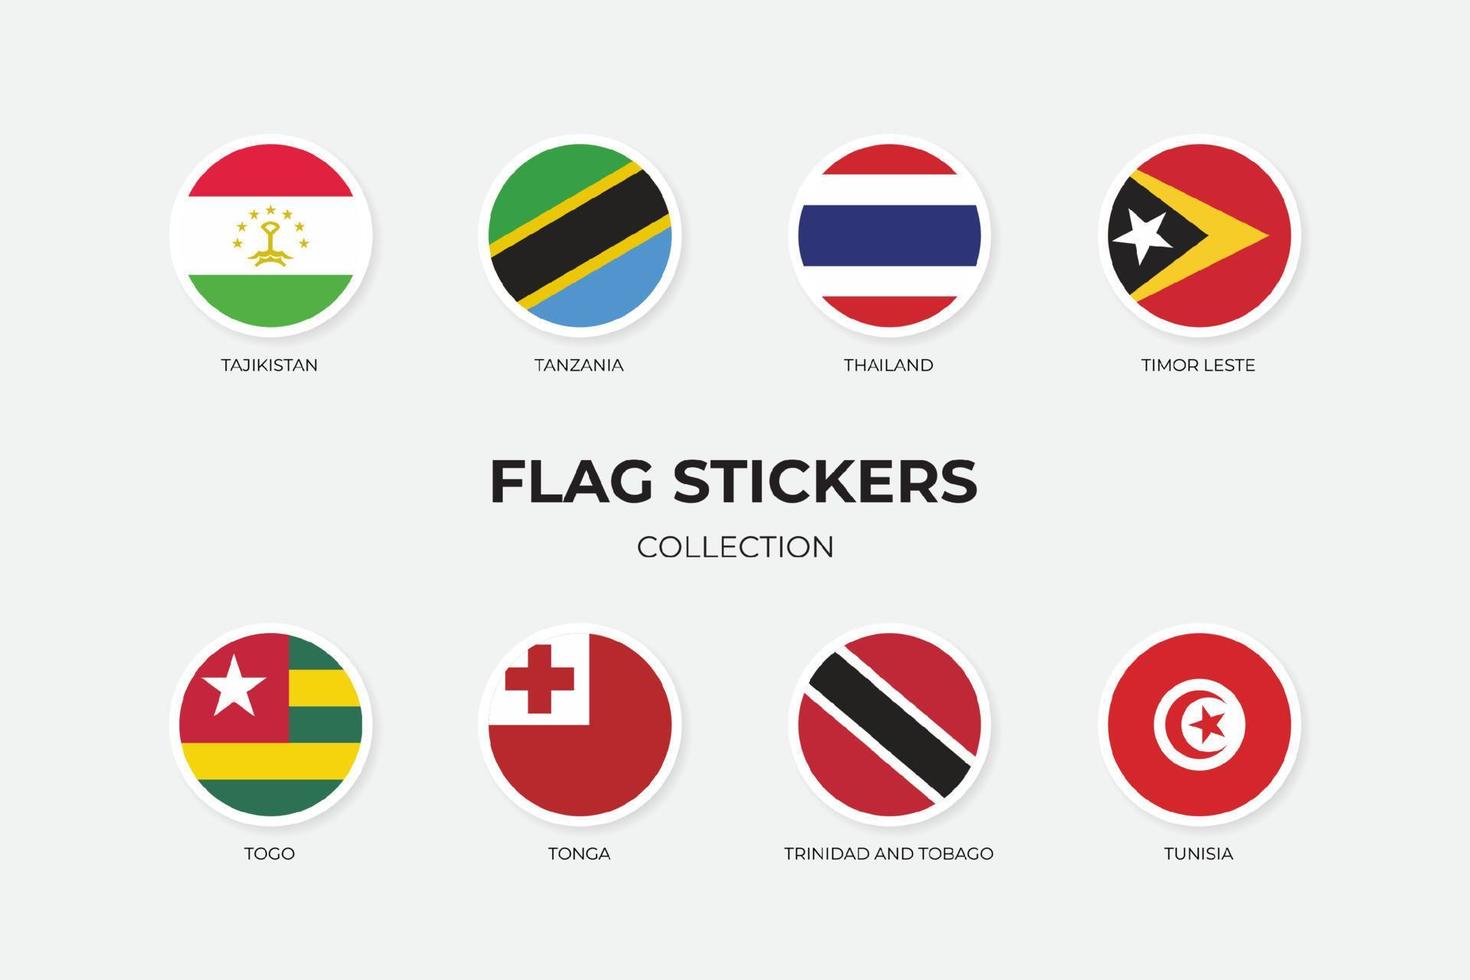 flaggklistermärken för tadzjikistan, tanzania, thailand, timor leste, togo, tonga, trinidad och tobago, tunisien vektor